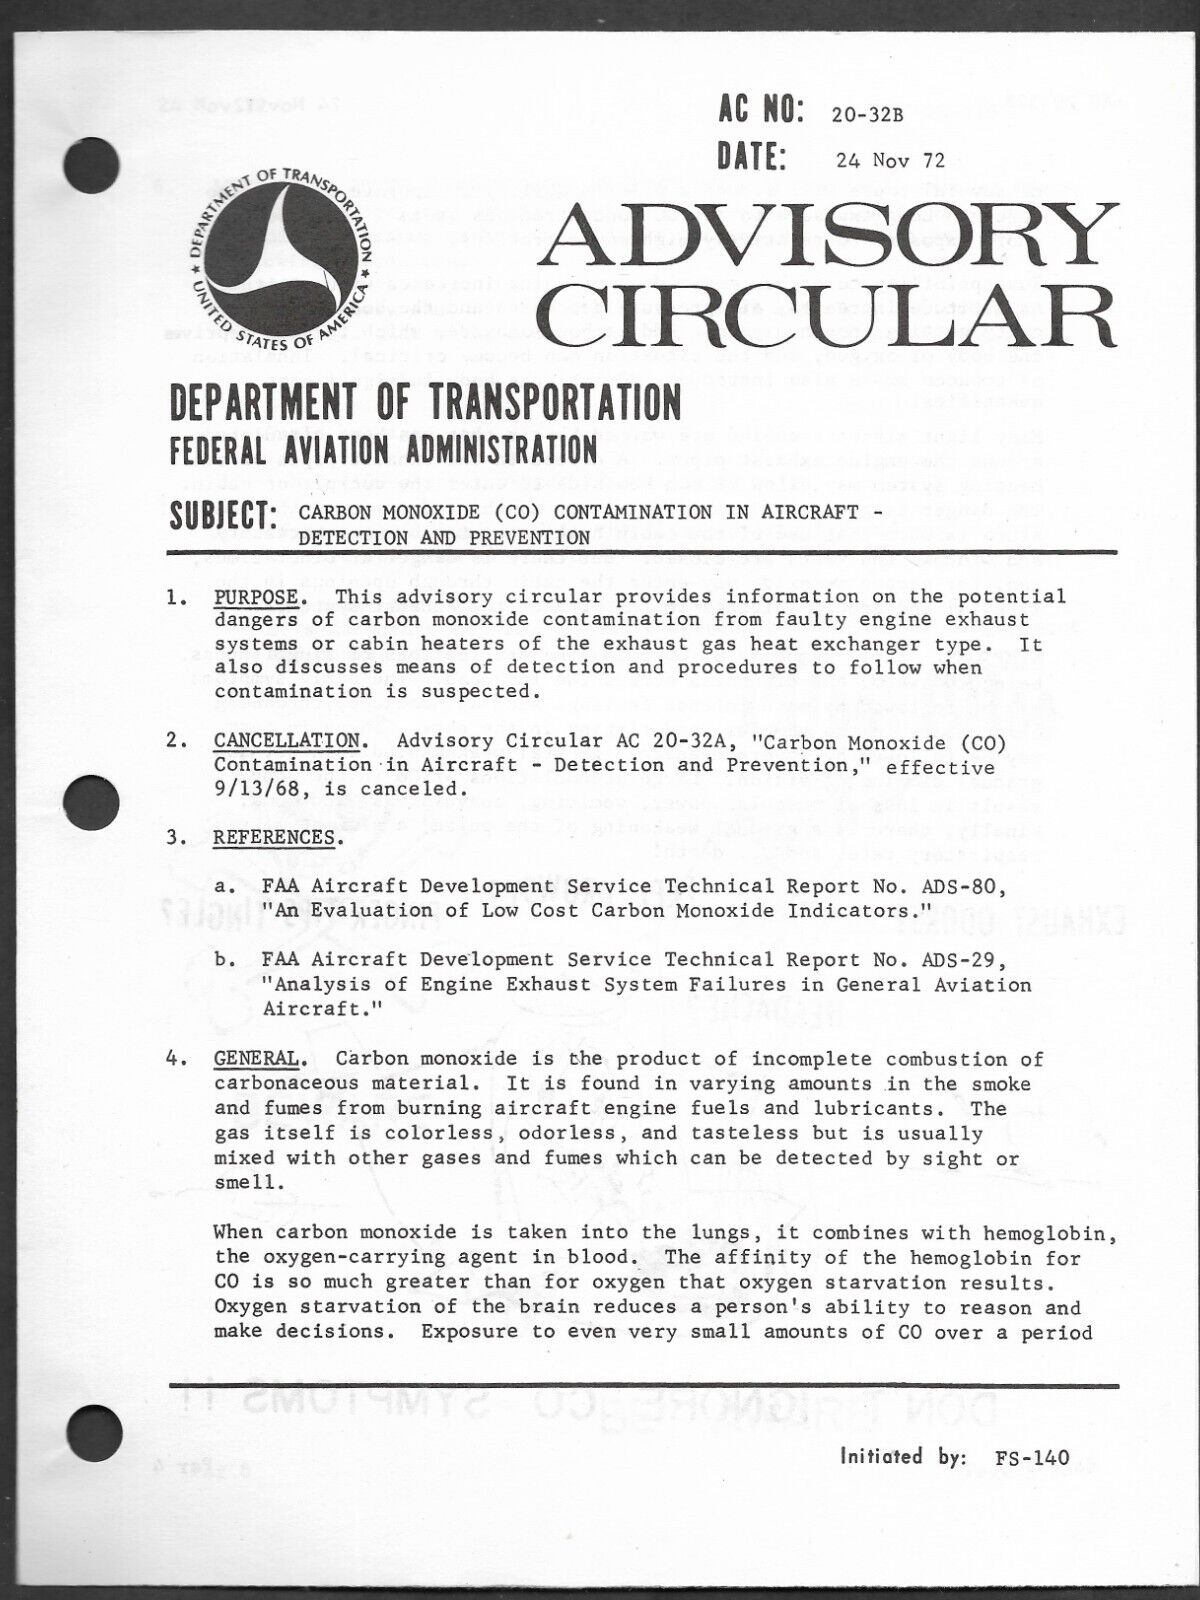 FAA - Advisory Circular - Carbon Monoxide Contamination in Aircraft 1972